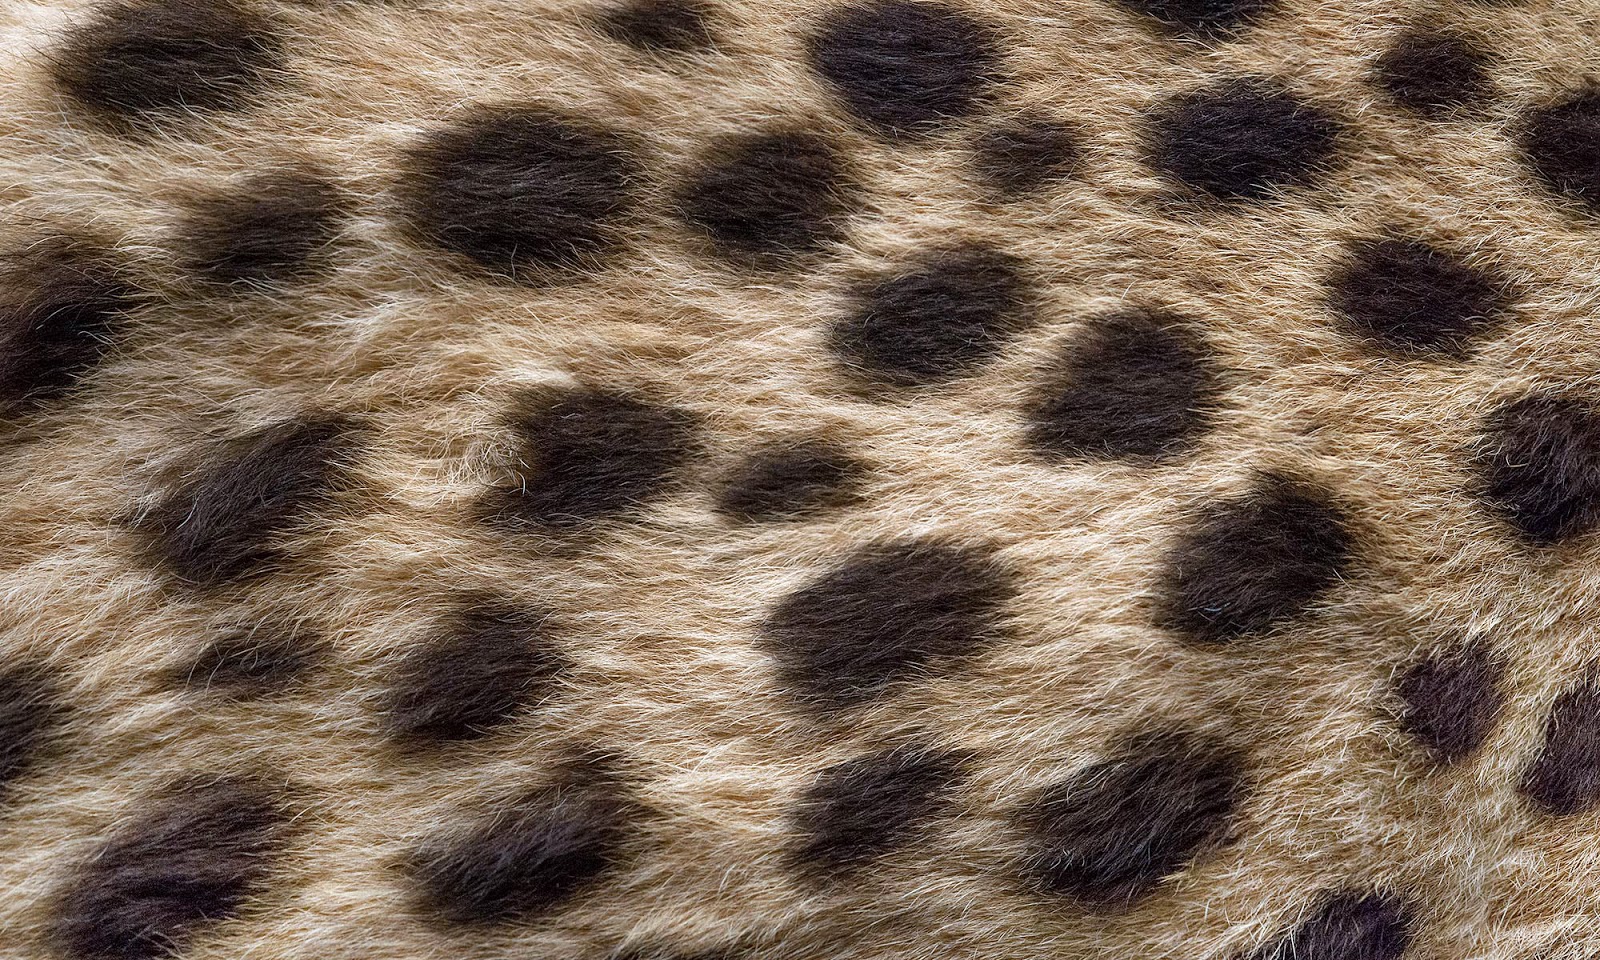 Zoë Design: Day 115 ~ Wallpaper-a-day "Cheetah"